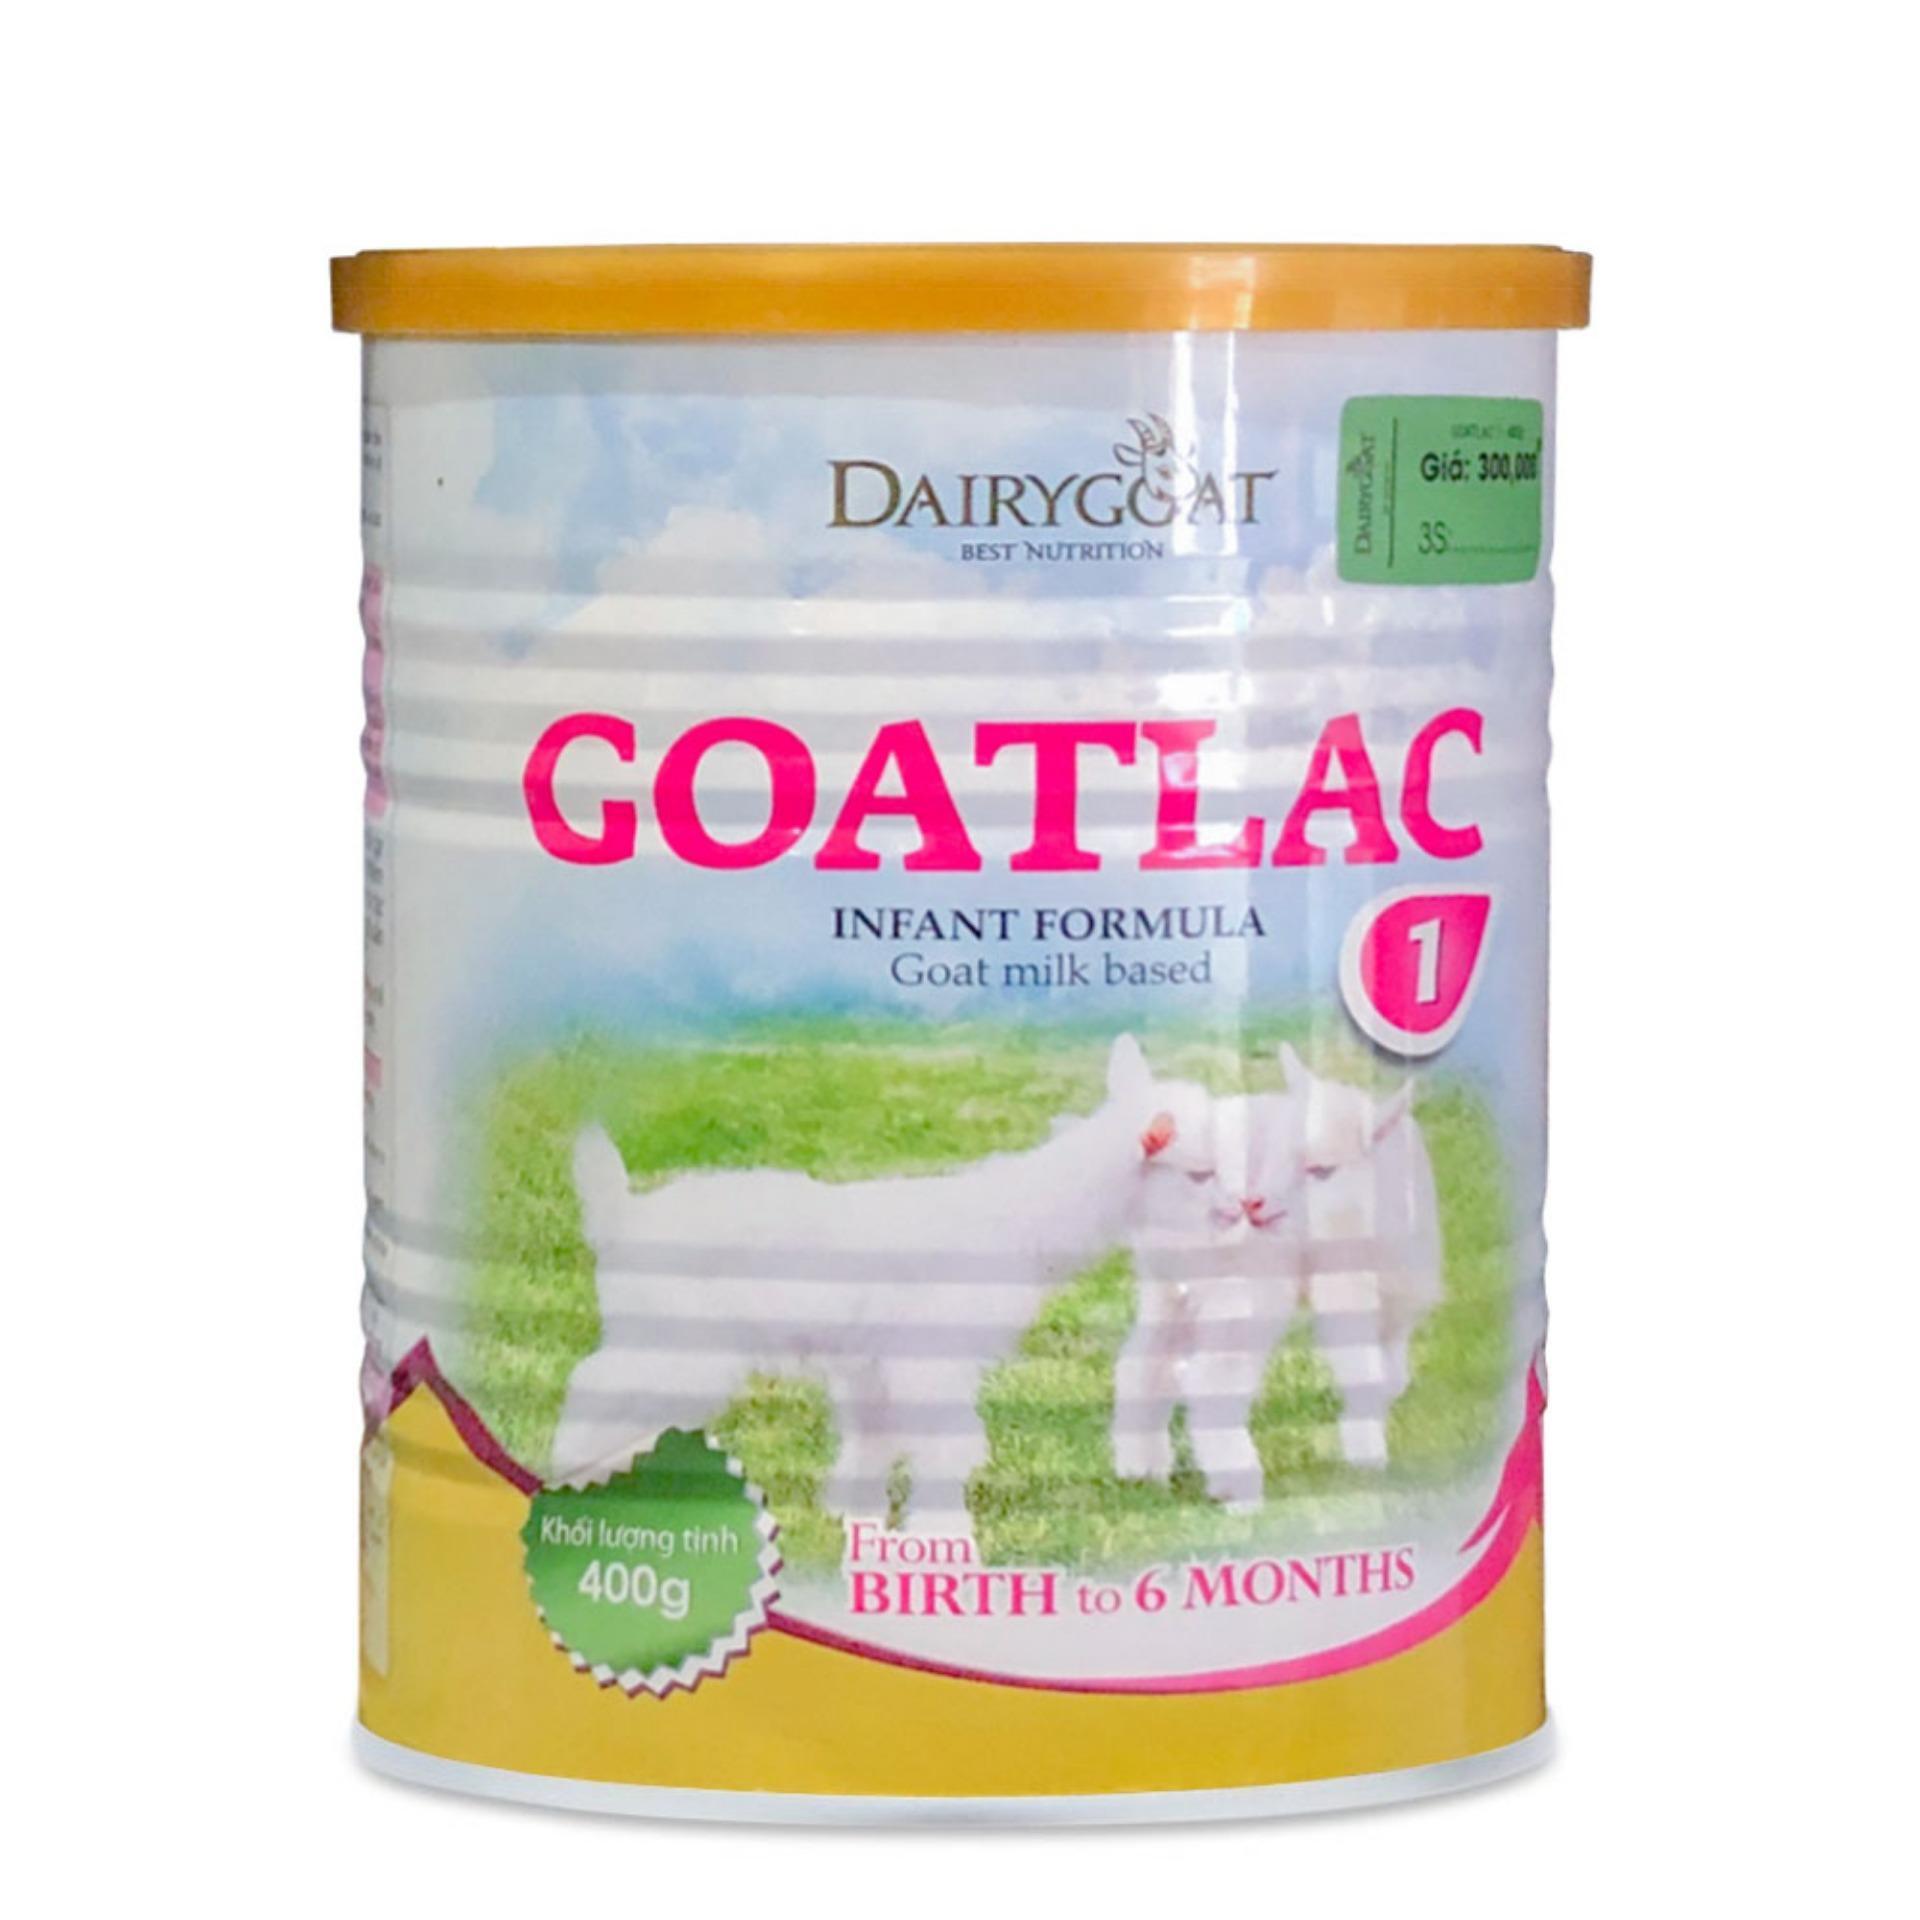 Sữa dê Goatlac 1 - hộp 400g (dành cho trẻ từ 0-6 tháng tuổi)